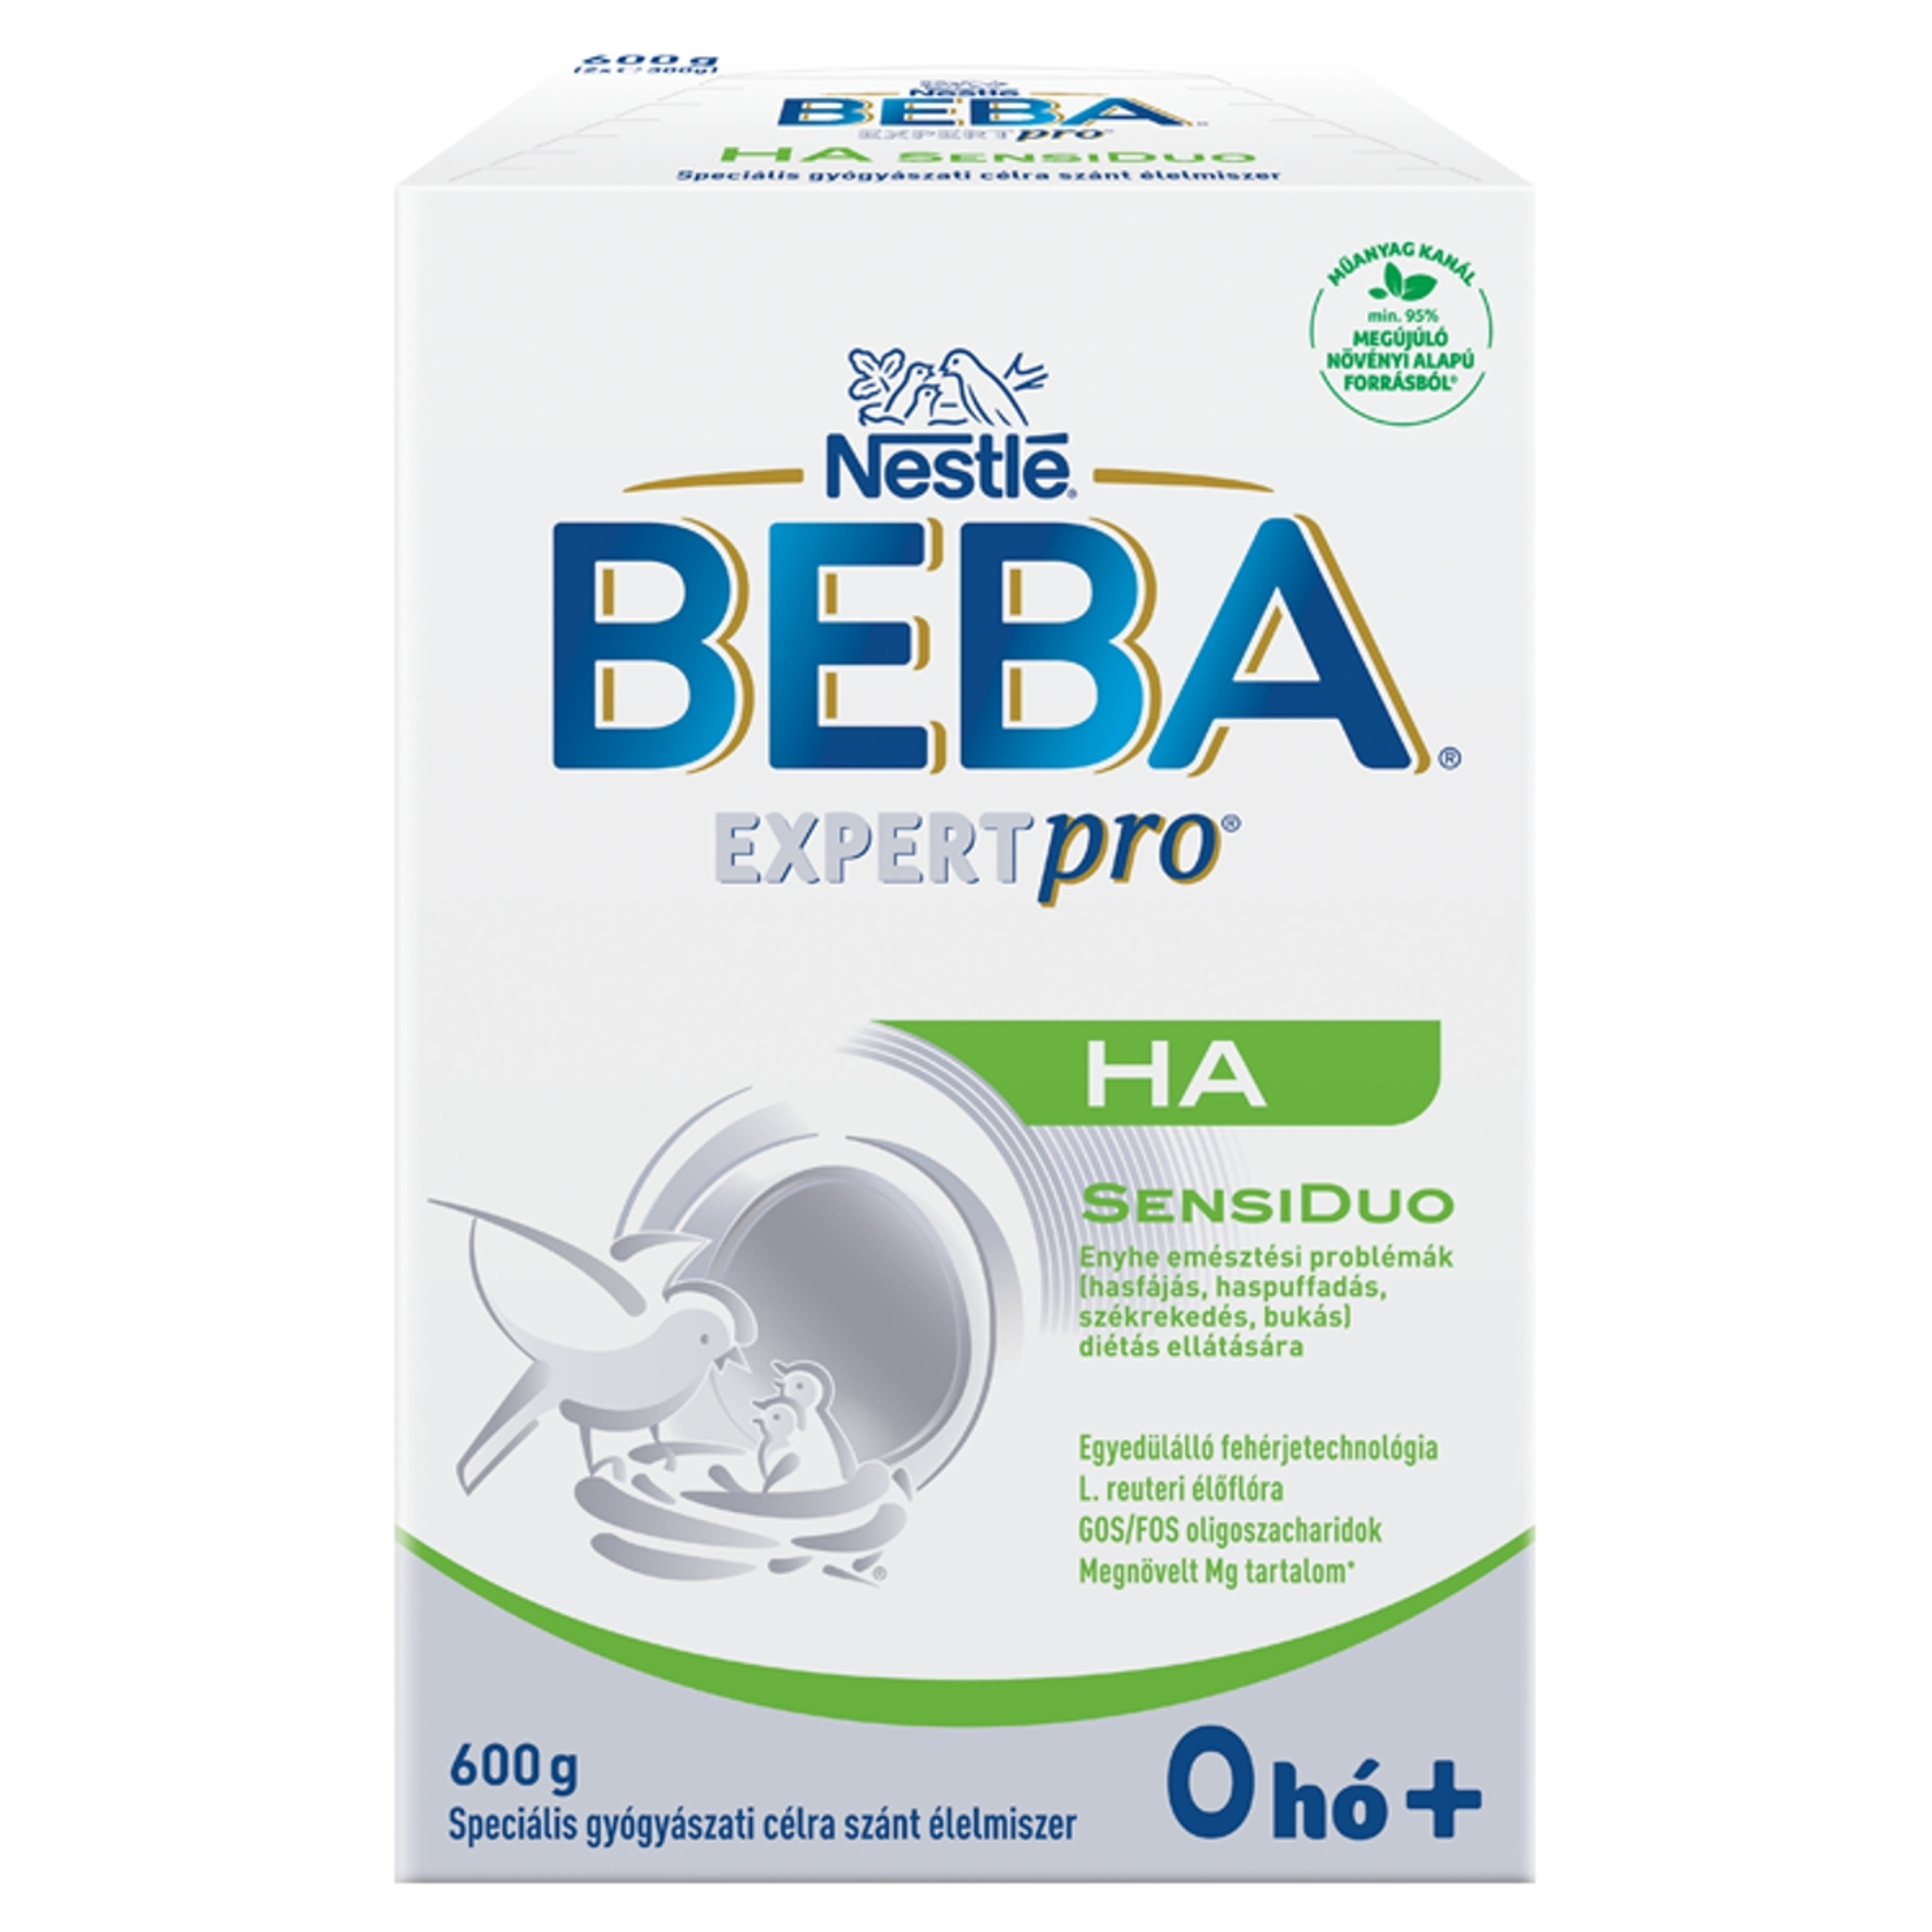 Beba Expertpro HA SensiDuo speciális gyógyászati célra szánt élelmiszer 0 hónapos kortól - 600 g